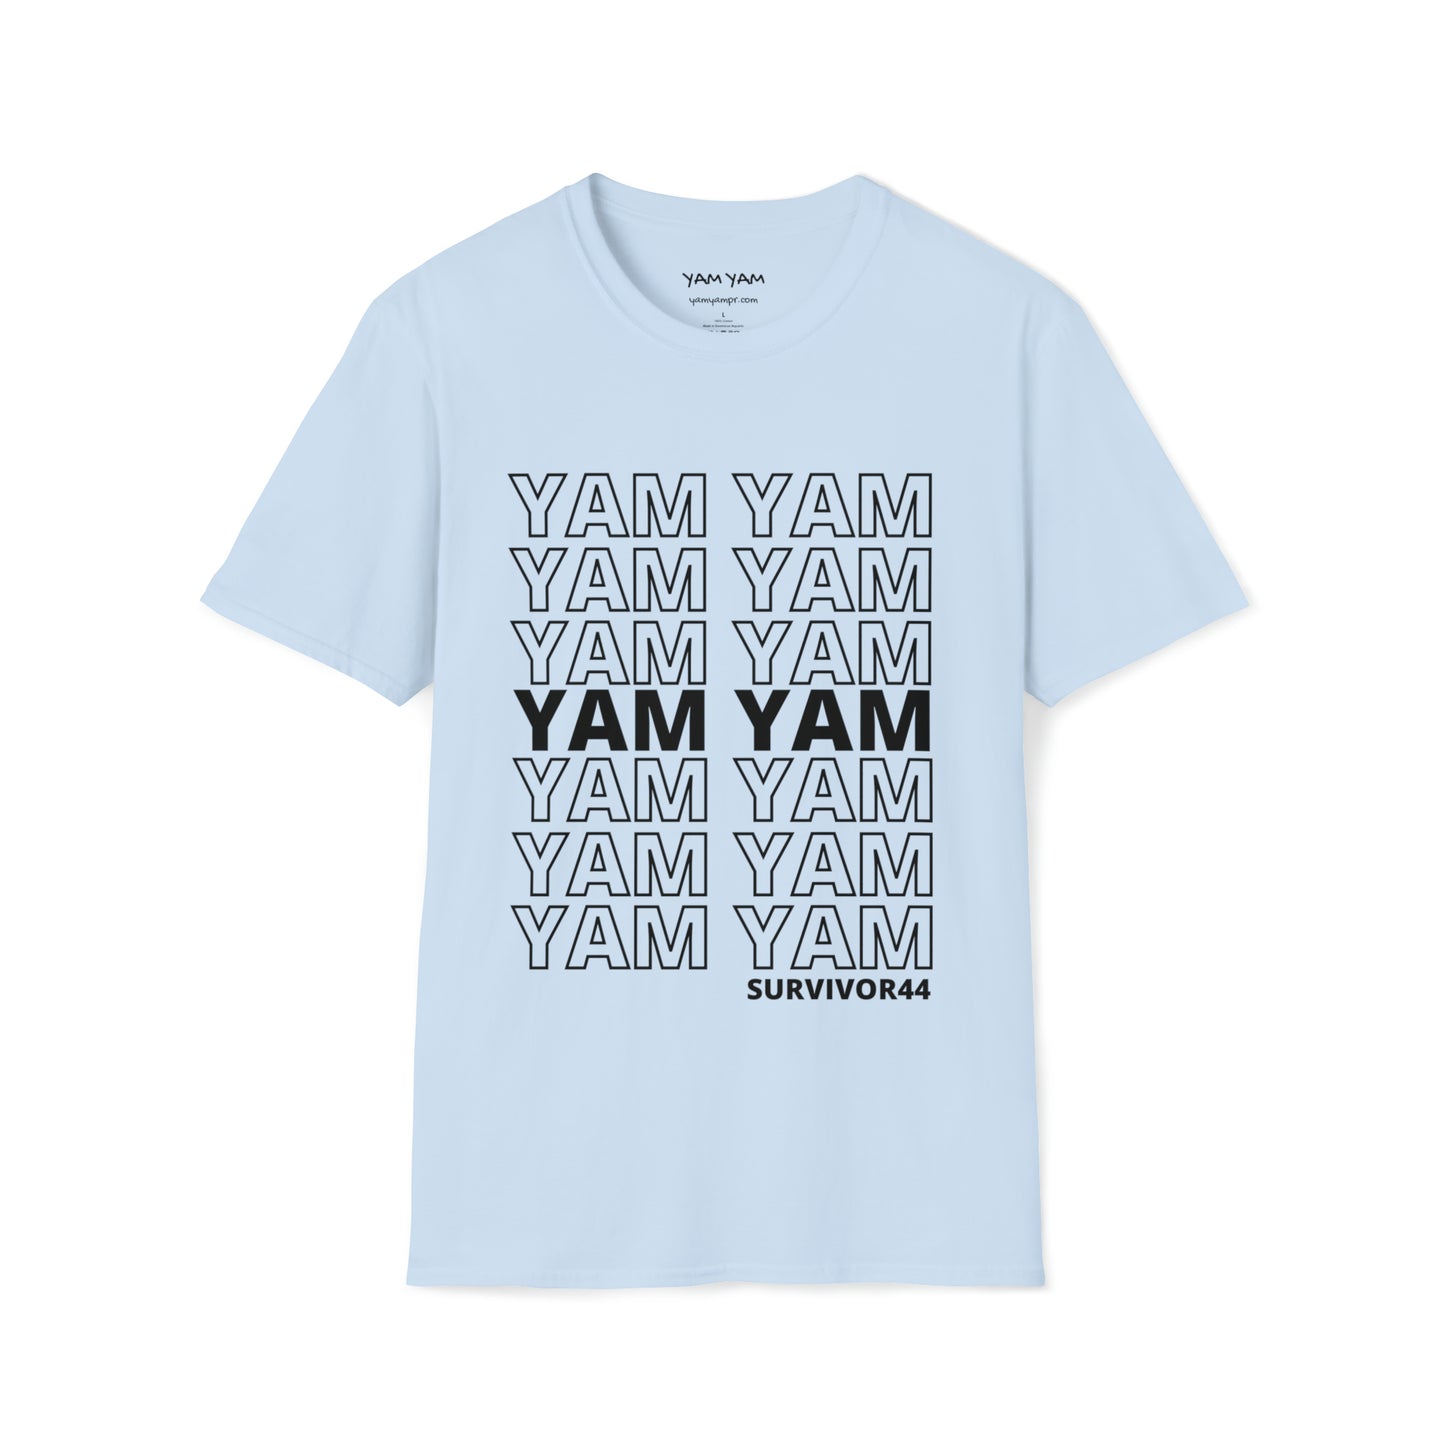 Yam Yam Thank You TShirt